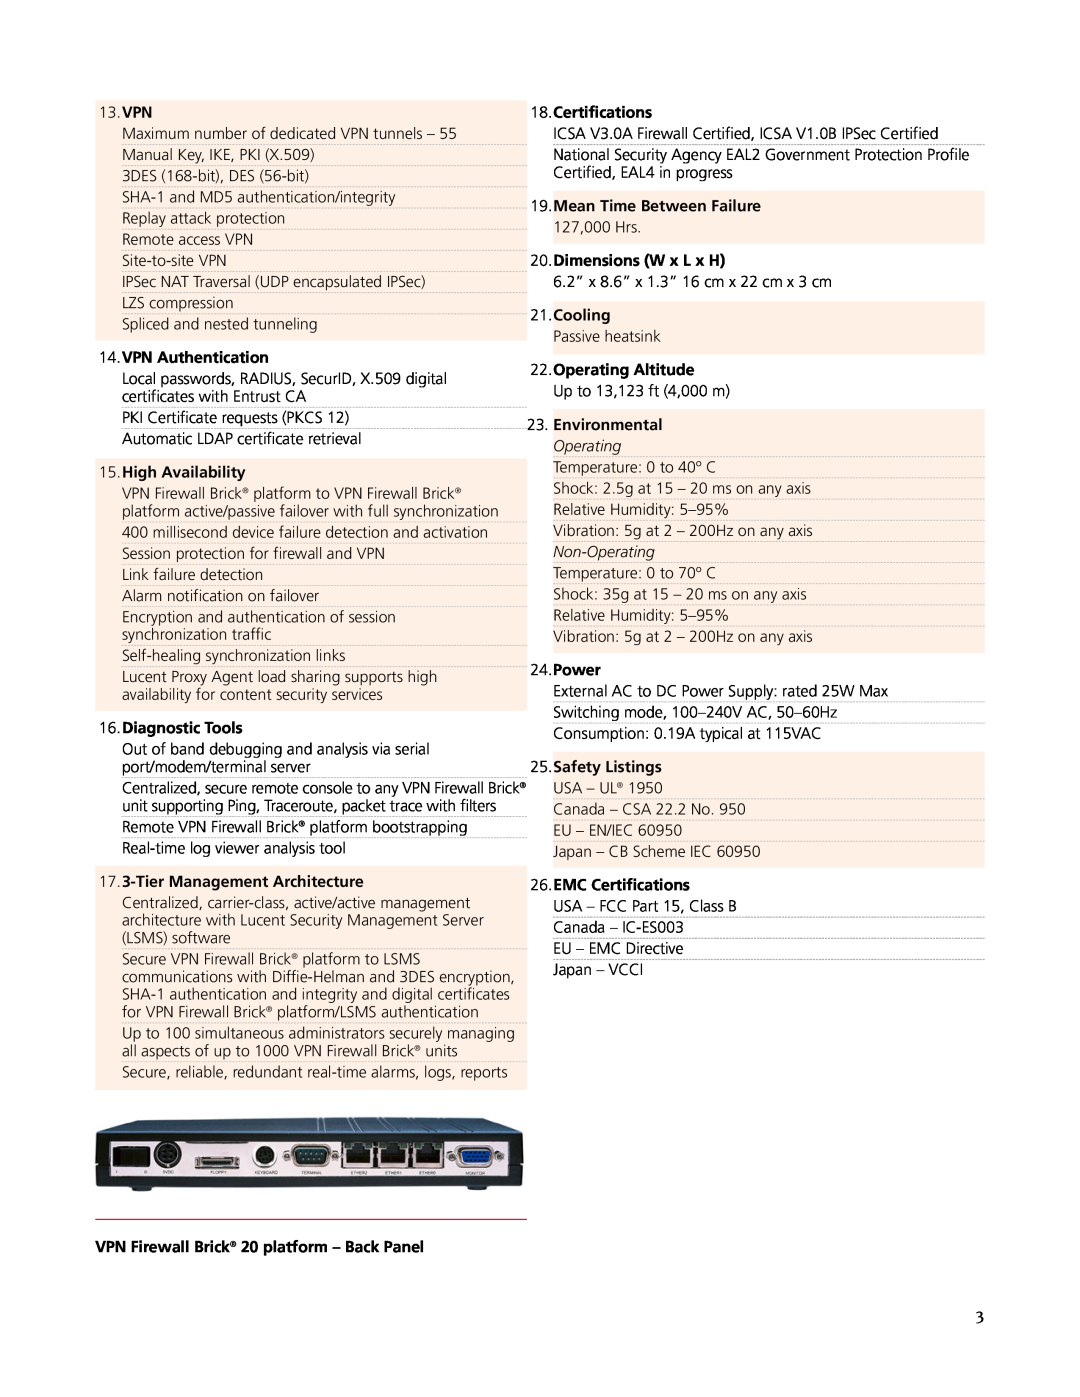 Lucent Technologies VPN Firewall Brick 20 manual Certifications 